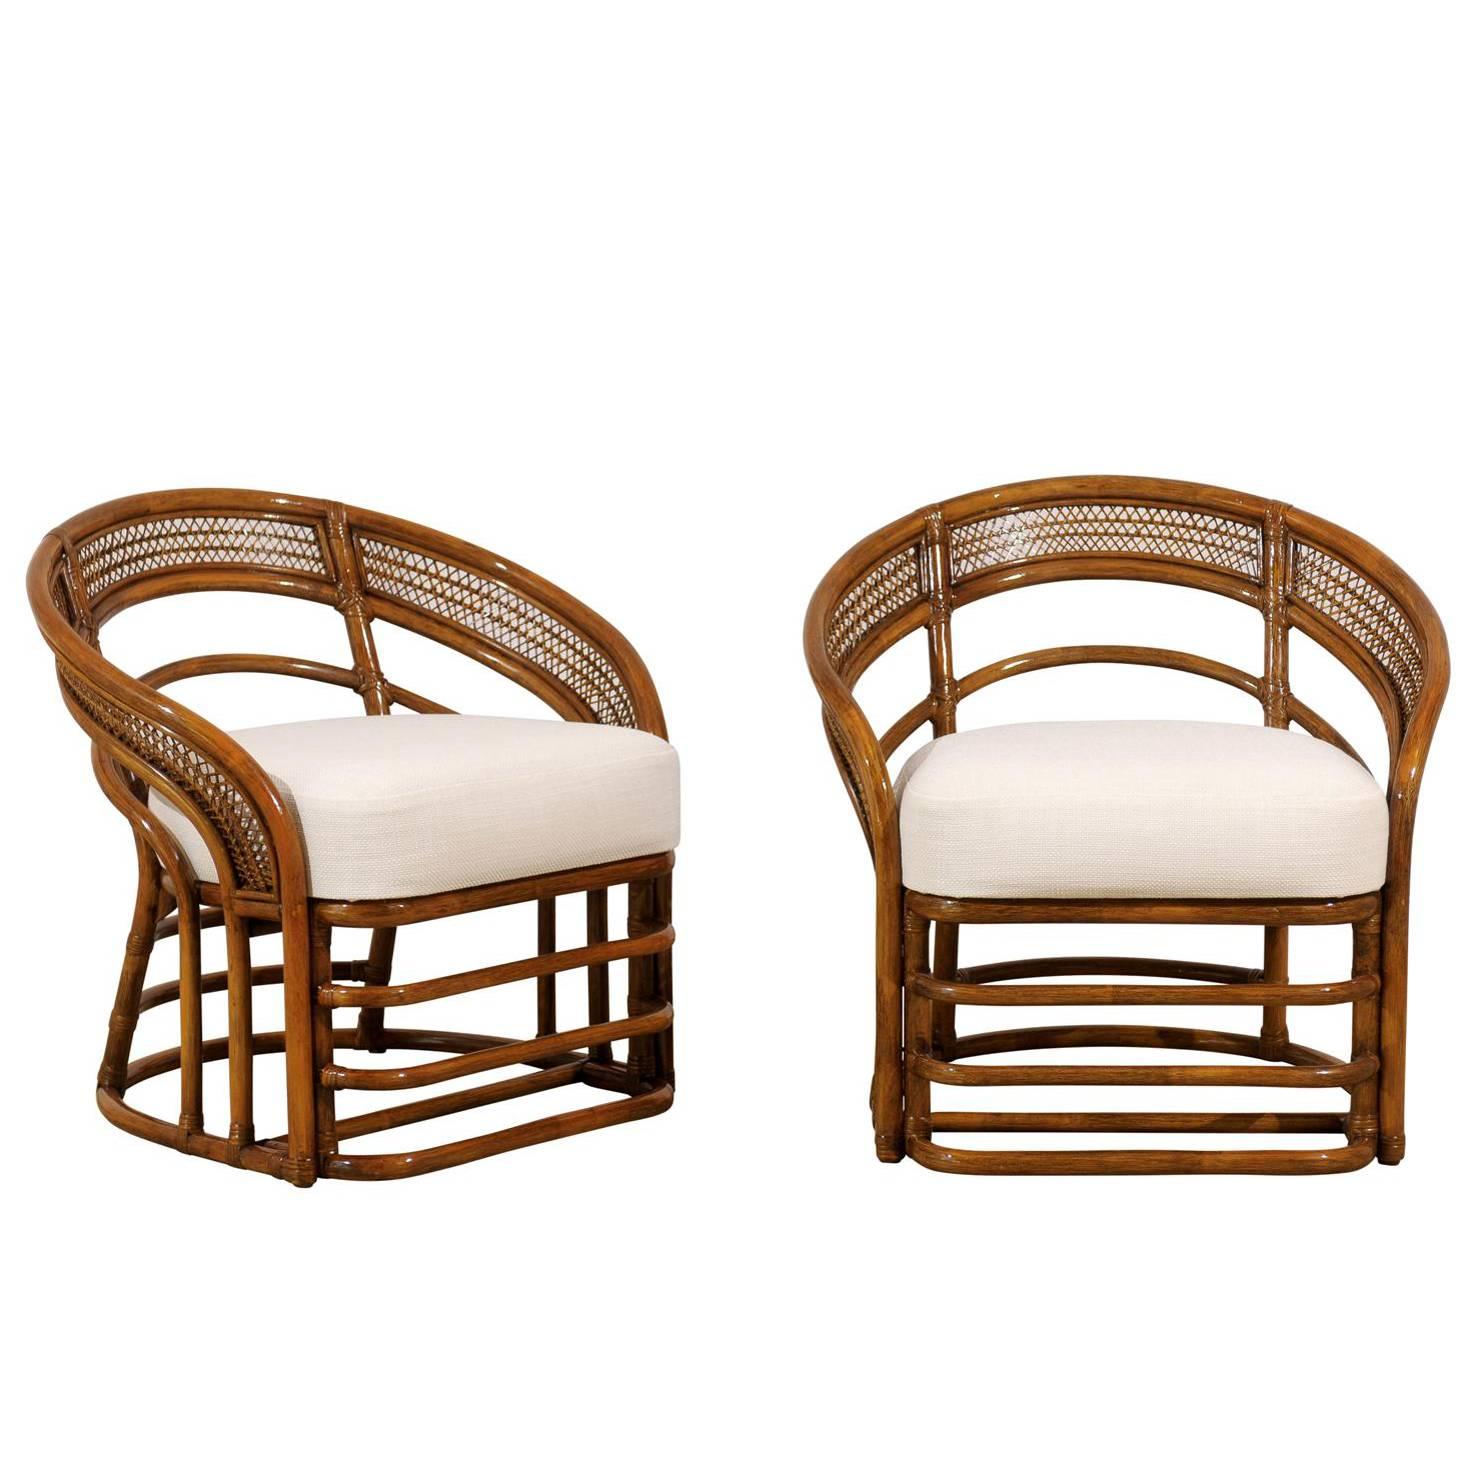 Fabulous Pair of Restored Rattan Chairs by Brown Jordan